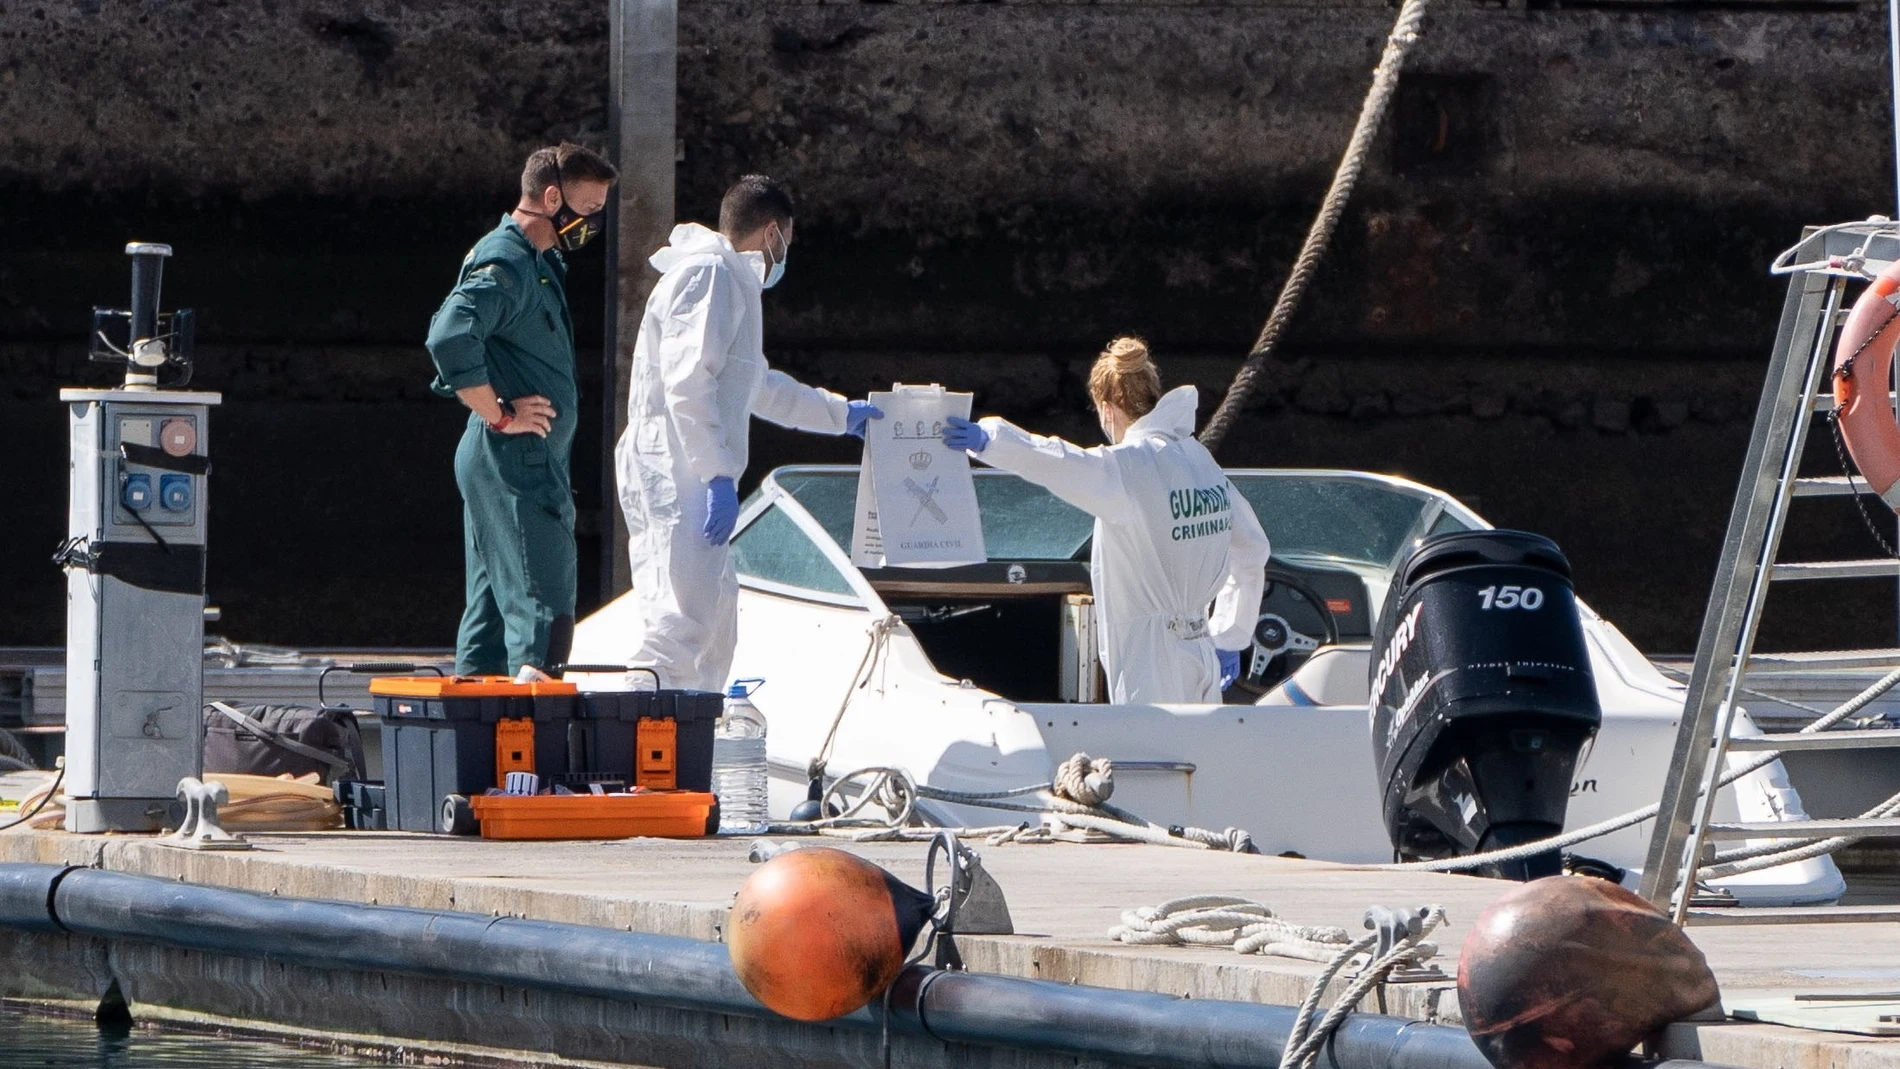 La Policía Científica analiza una embarcación en la base de la Guardia Civil de la dársena pesquera de Santa Cruz de Tenerife